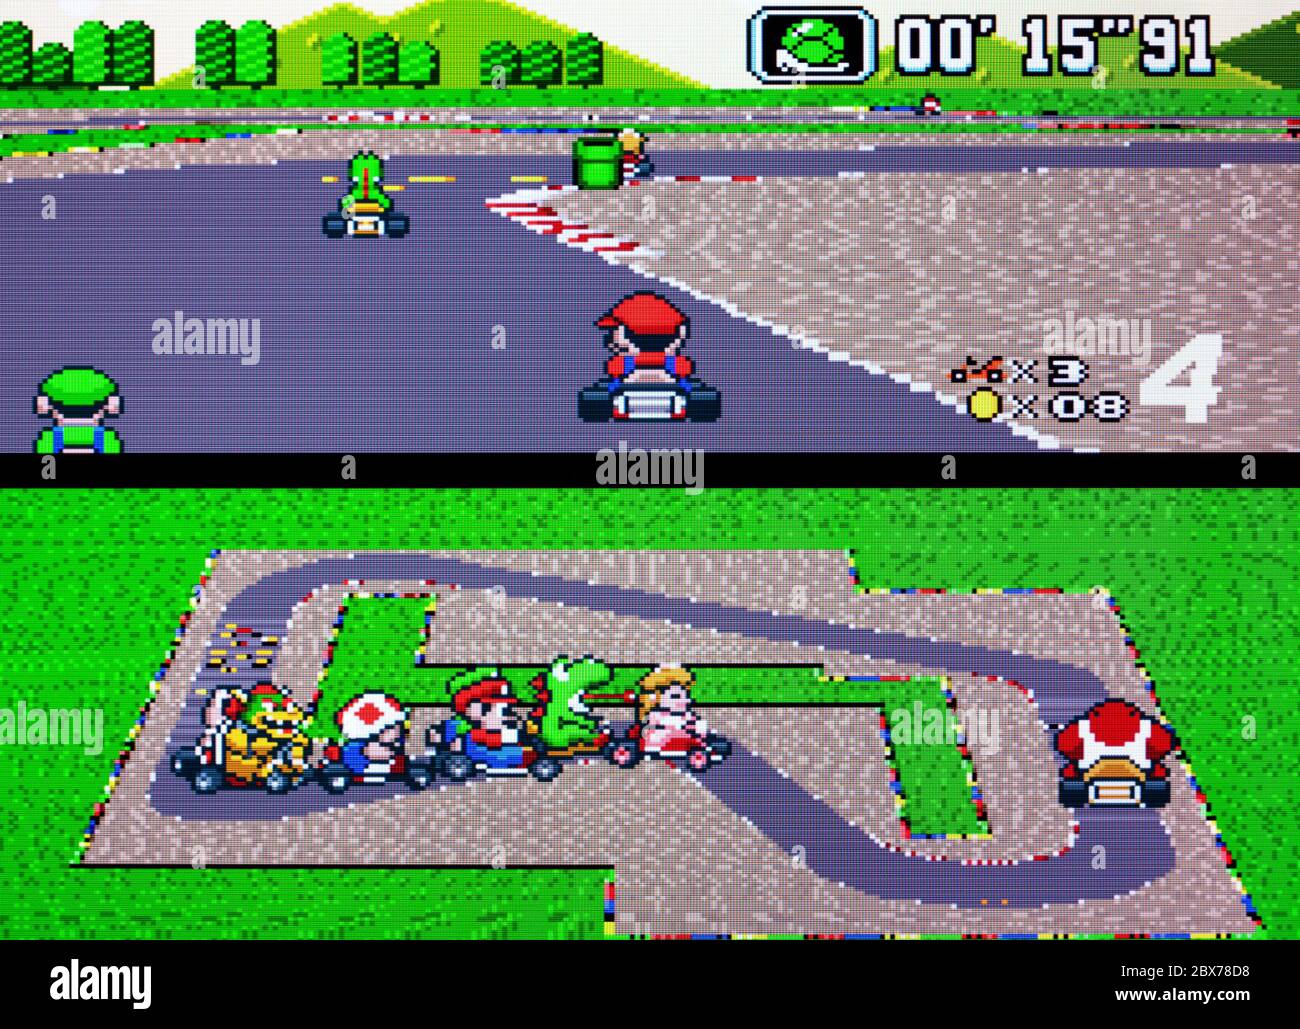 Super Mario Kart MarioKart - SNES Super Nintendo - nur zur redaktionellen Verwendung Stockfoto